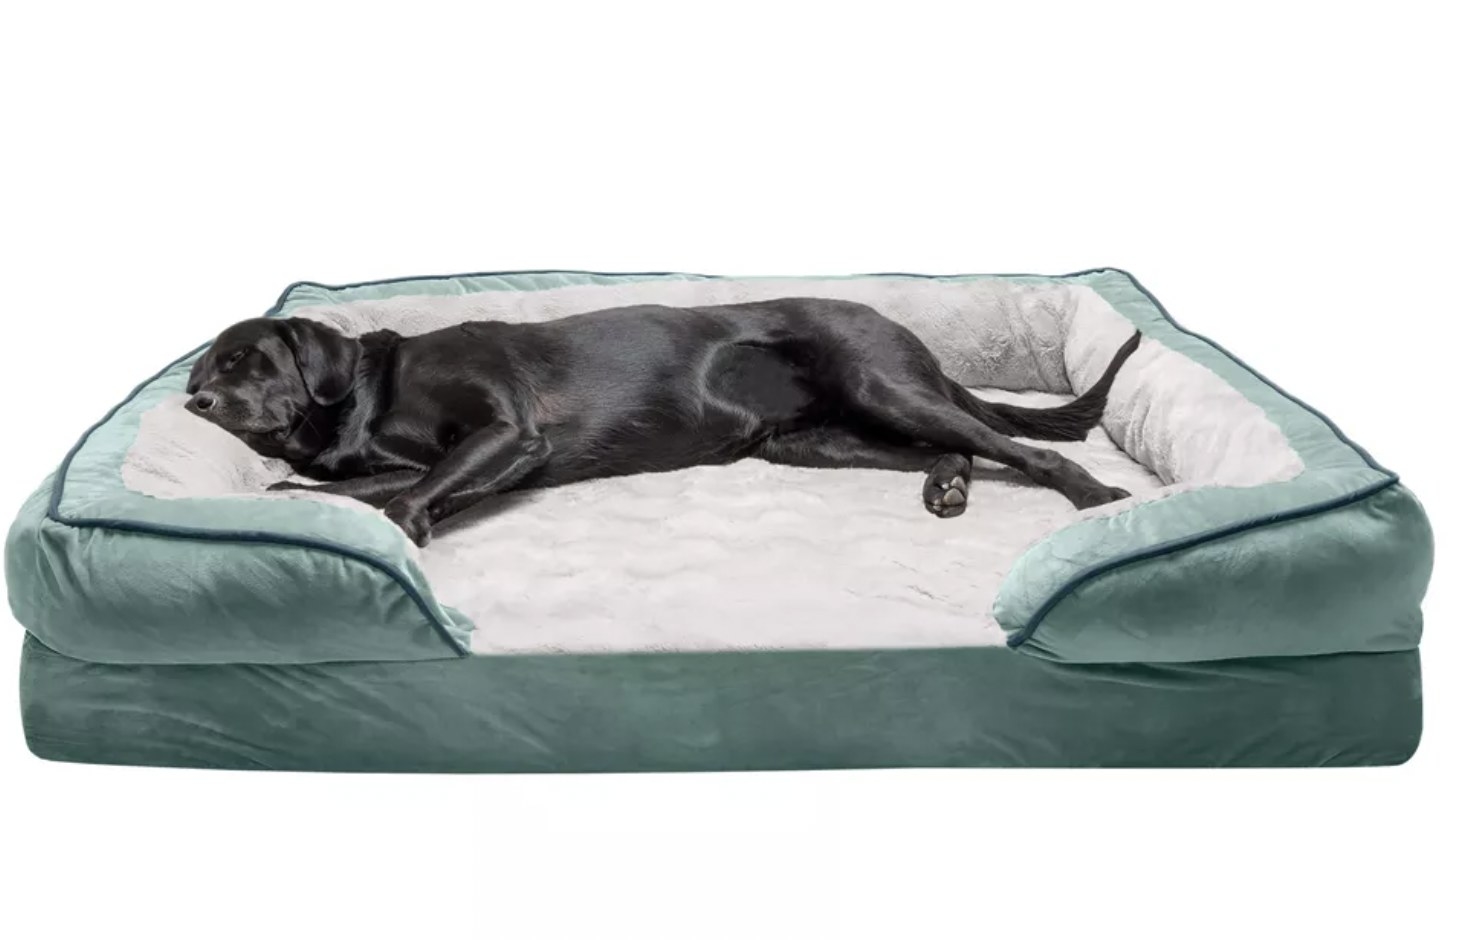 Lab resting on plush teal velvet dog bed